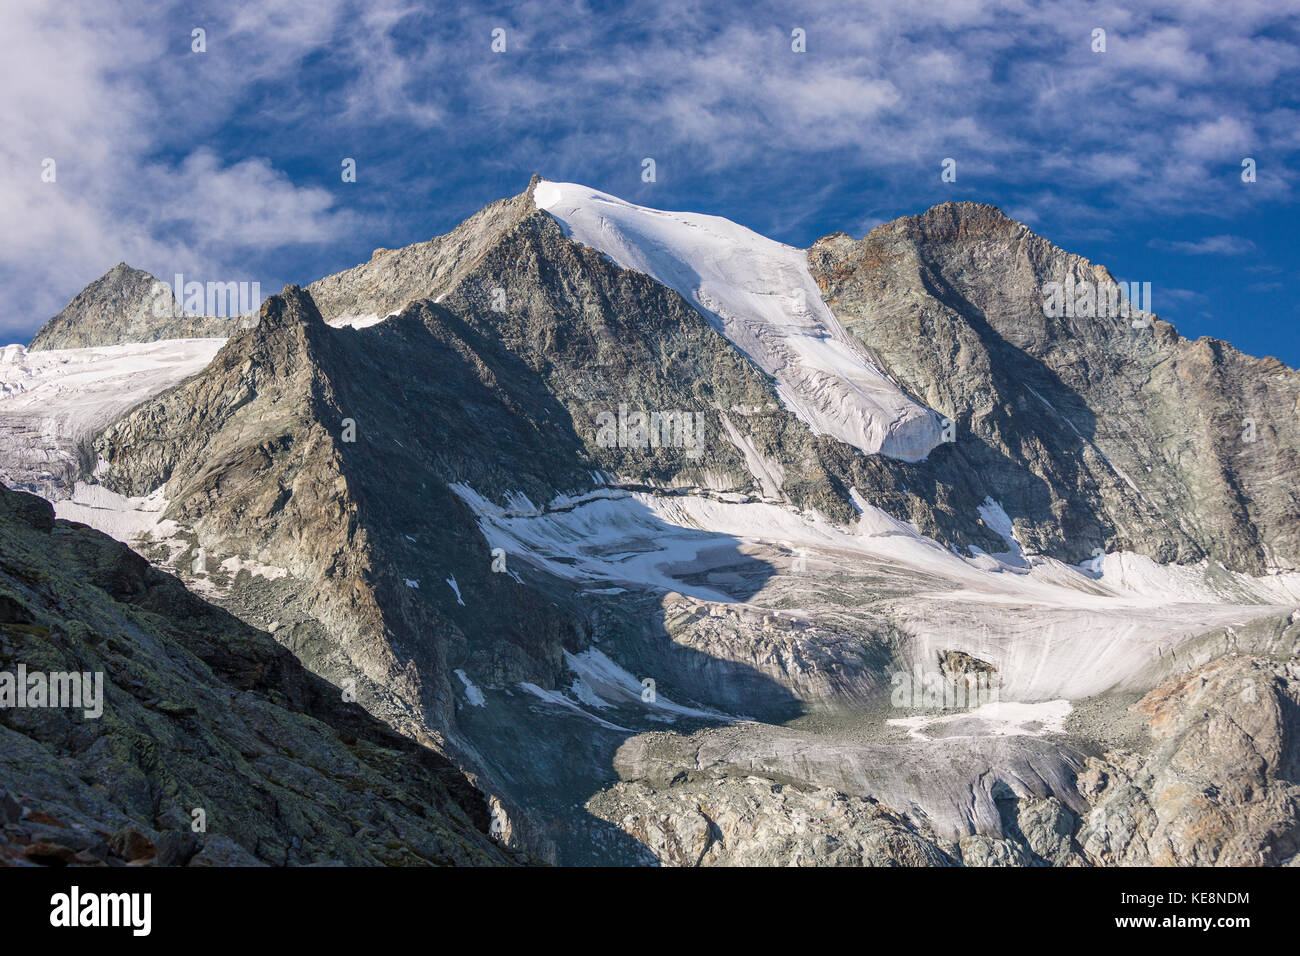 La vallée de Moiry, Suisse - glacier de Moiry paysage de montagne, dans les Alpes Pennines dans le canton du Valais. Banque D'Images